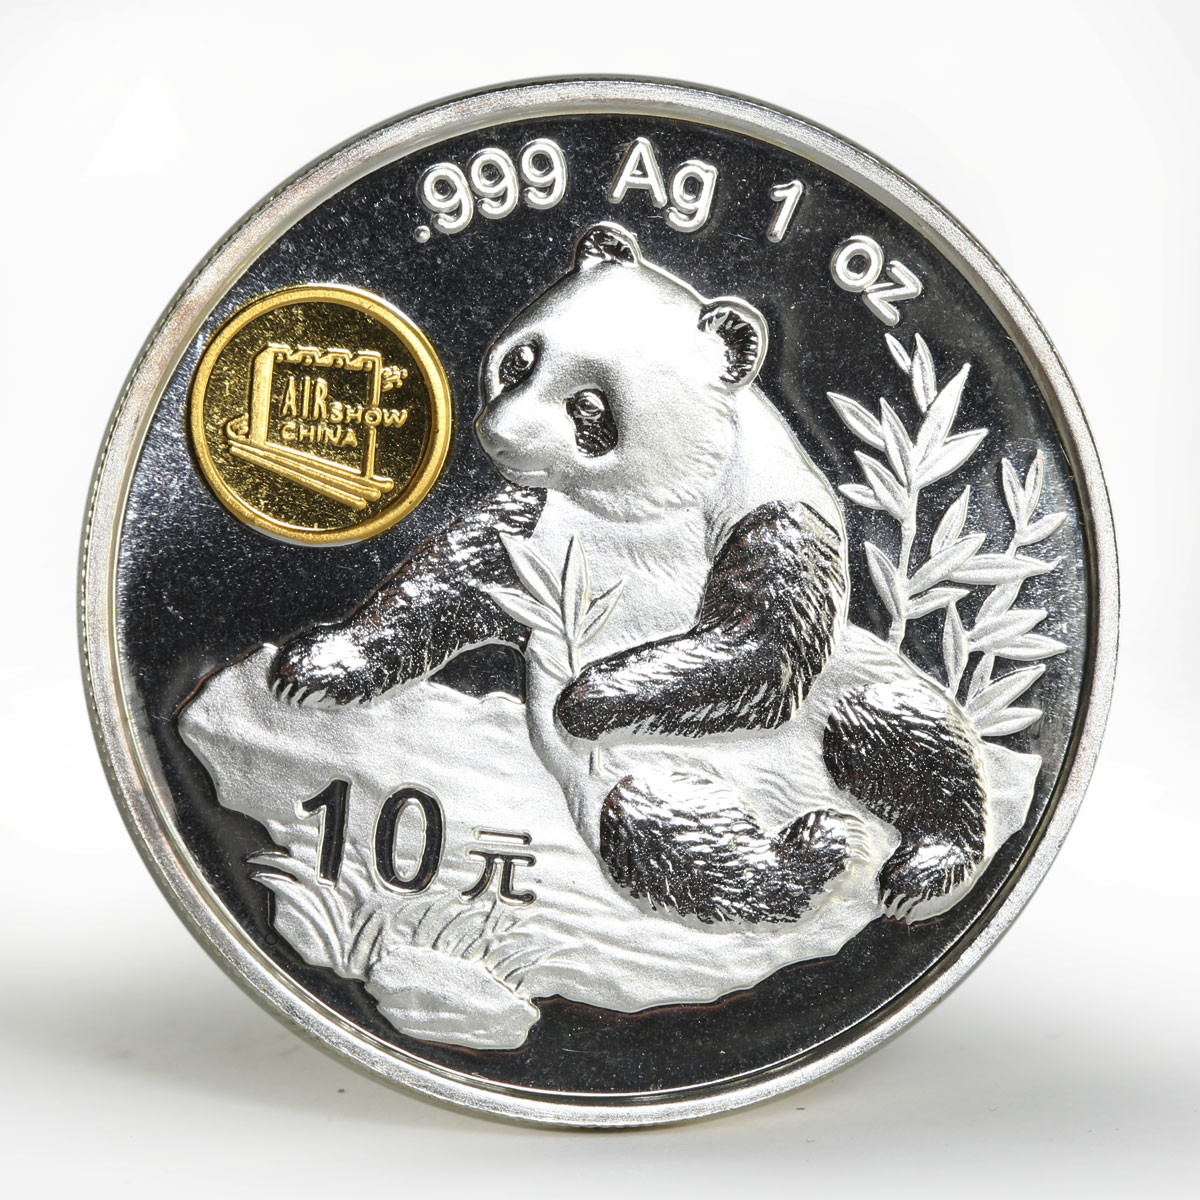 China 10 yuan Panda Series AIR show proof silver coin 1998